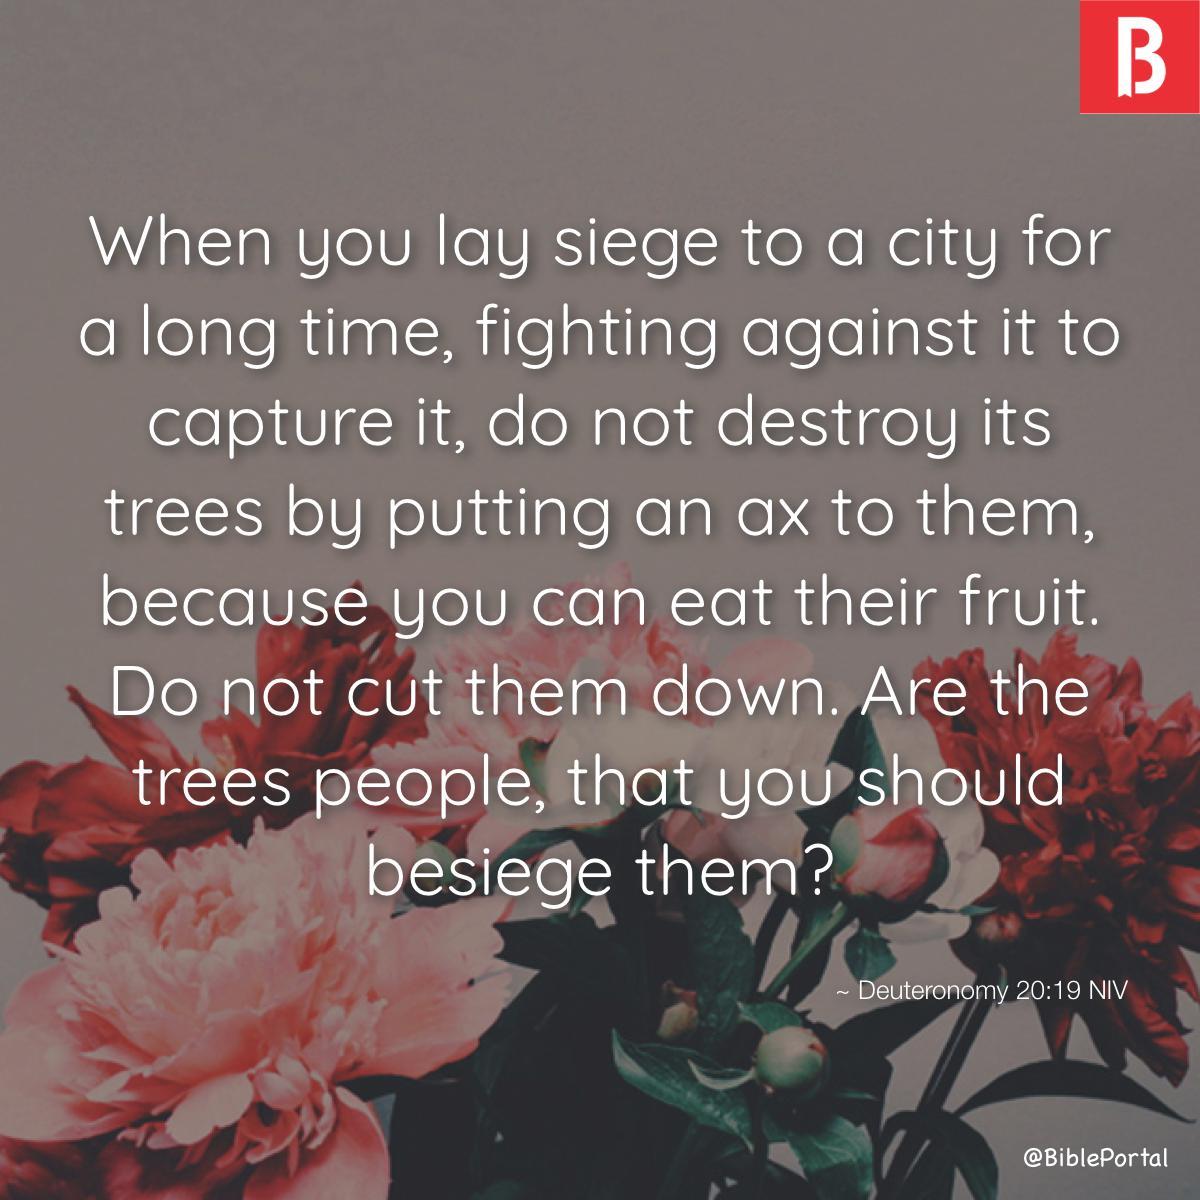 Deuteronomy 20:19 NIV